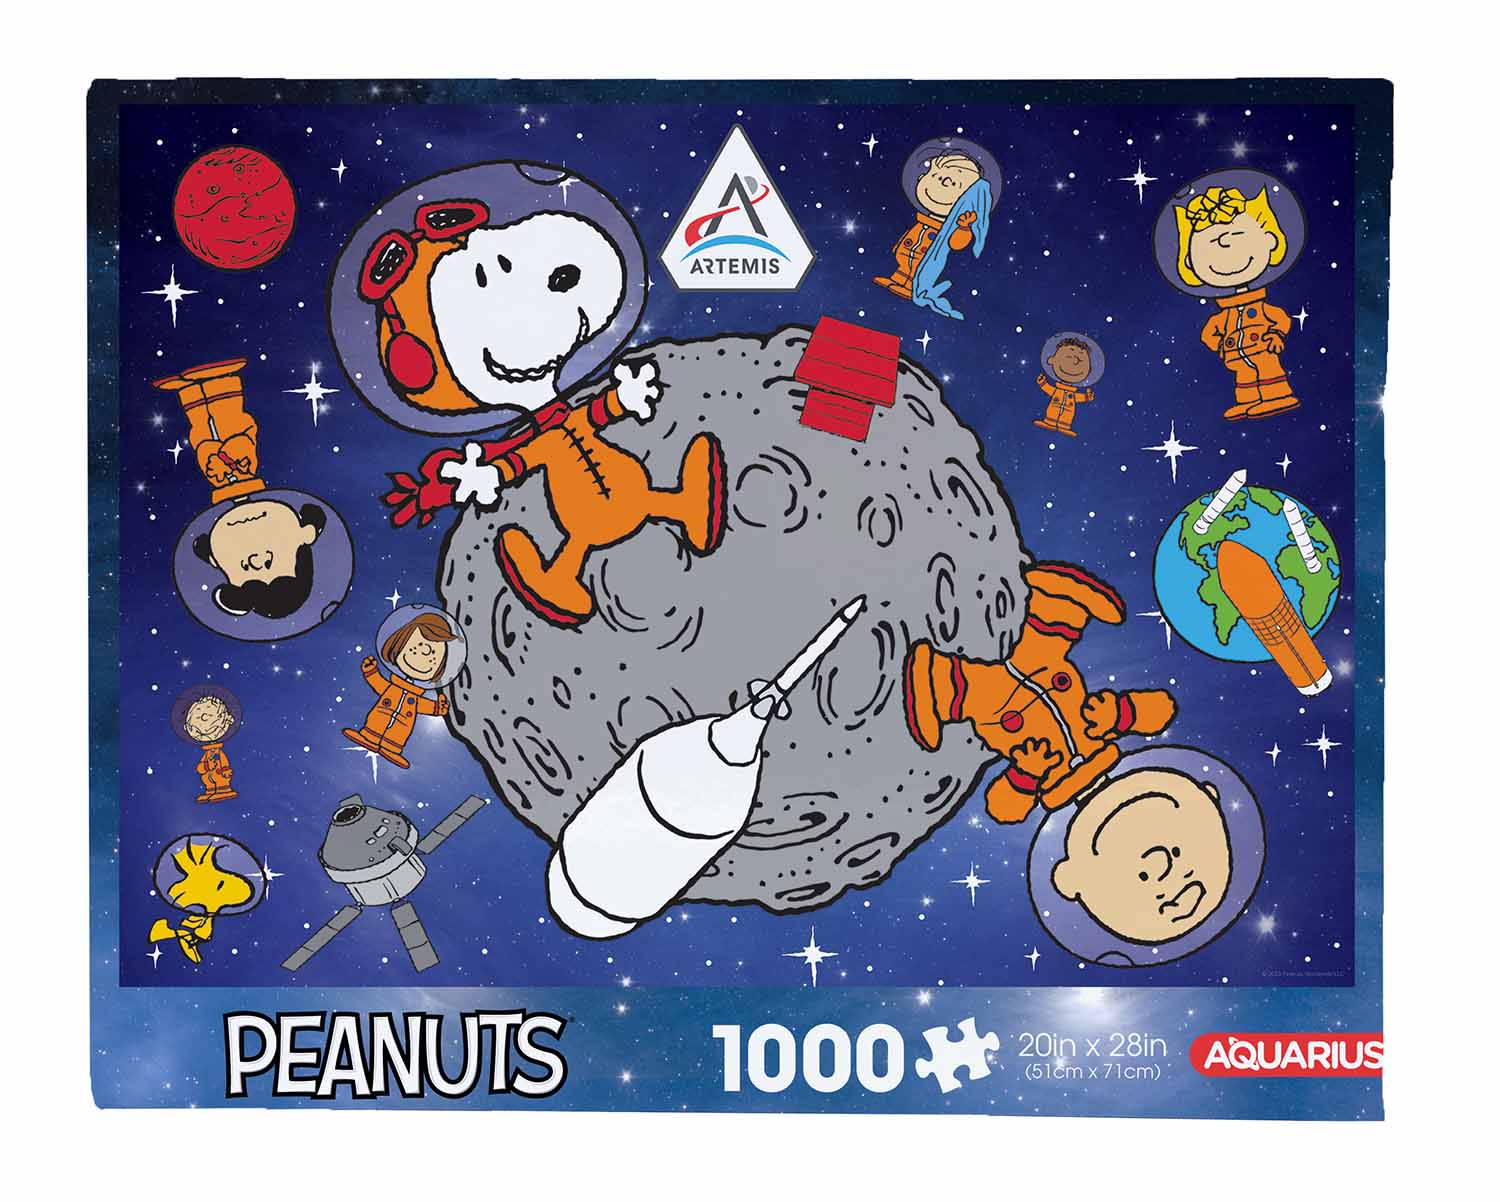 Peanuts Artemis